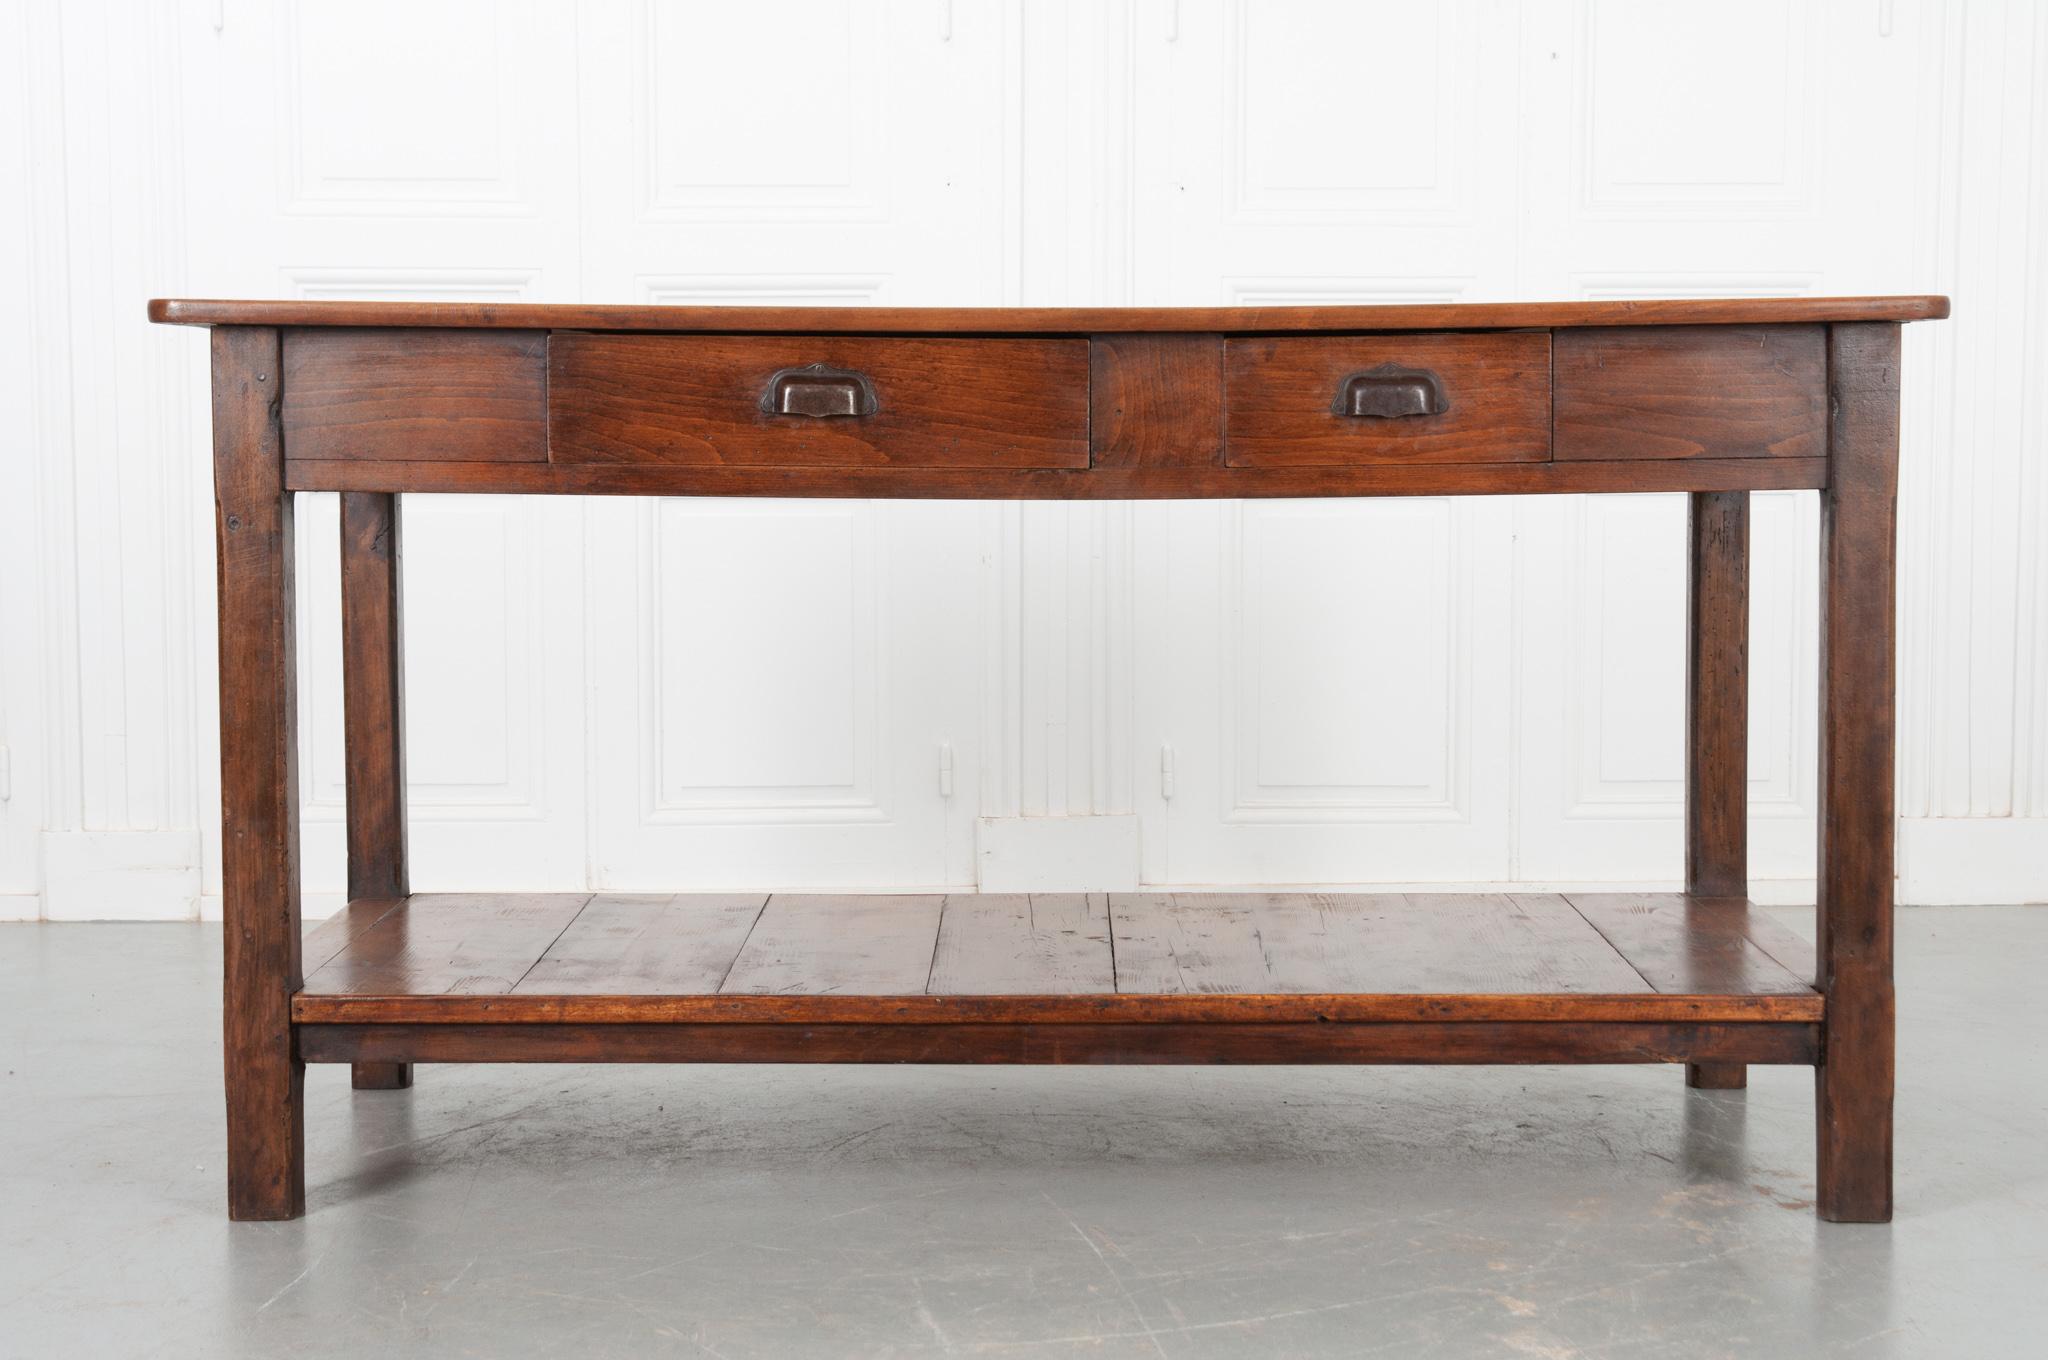 Dieser schöne Buchenholztisch stammt aus Frankreich, ca. 1890, und ist in sehr gutem Zustand. Vier Holzbretter bilden die Oberseite, die den Blick auf die gewellte Maserung freigibt, die mit französischer Wachspaste geglättet wurde, um die herrliche